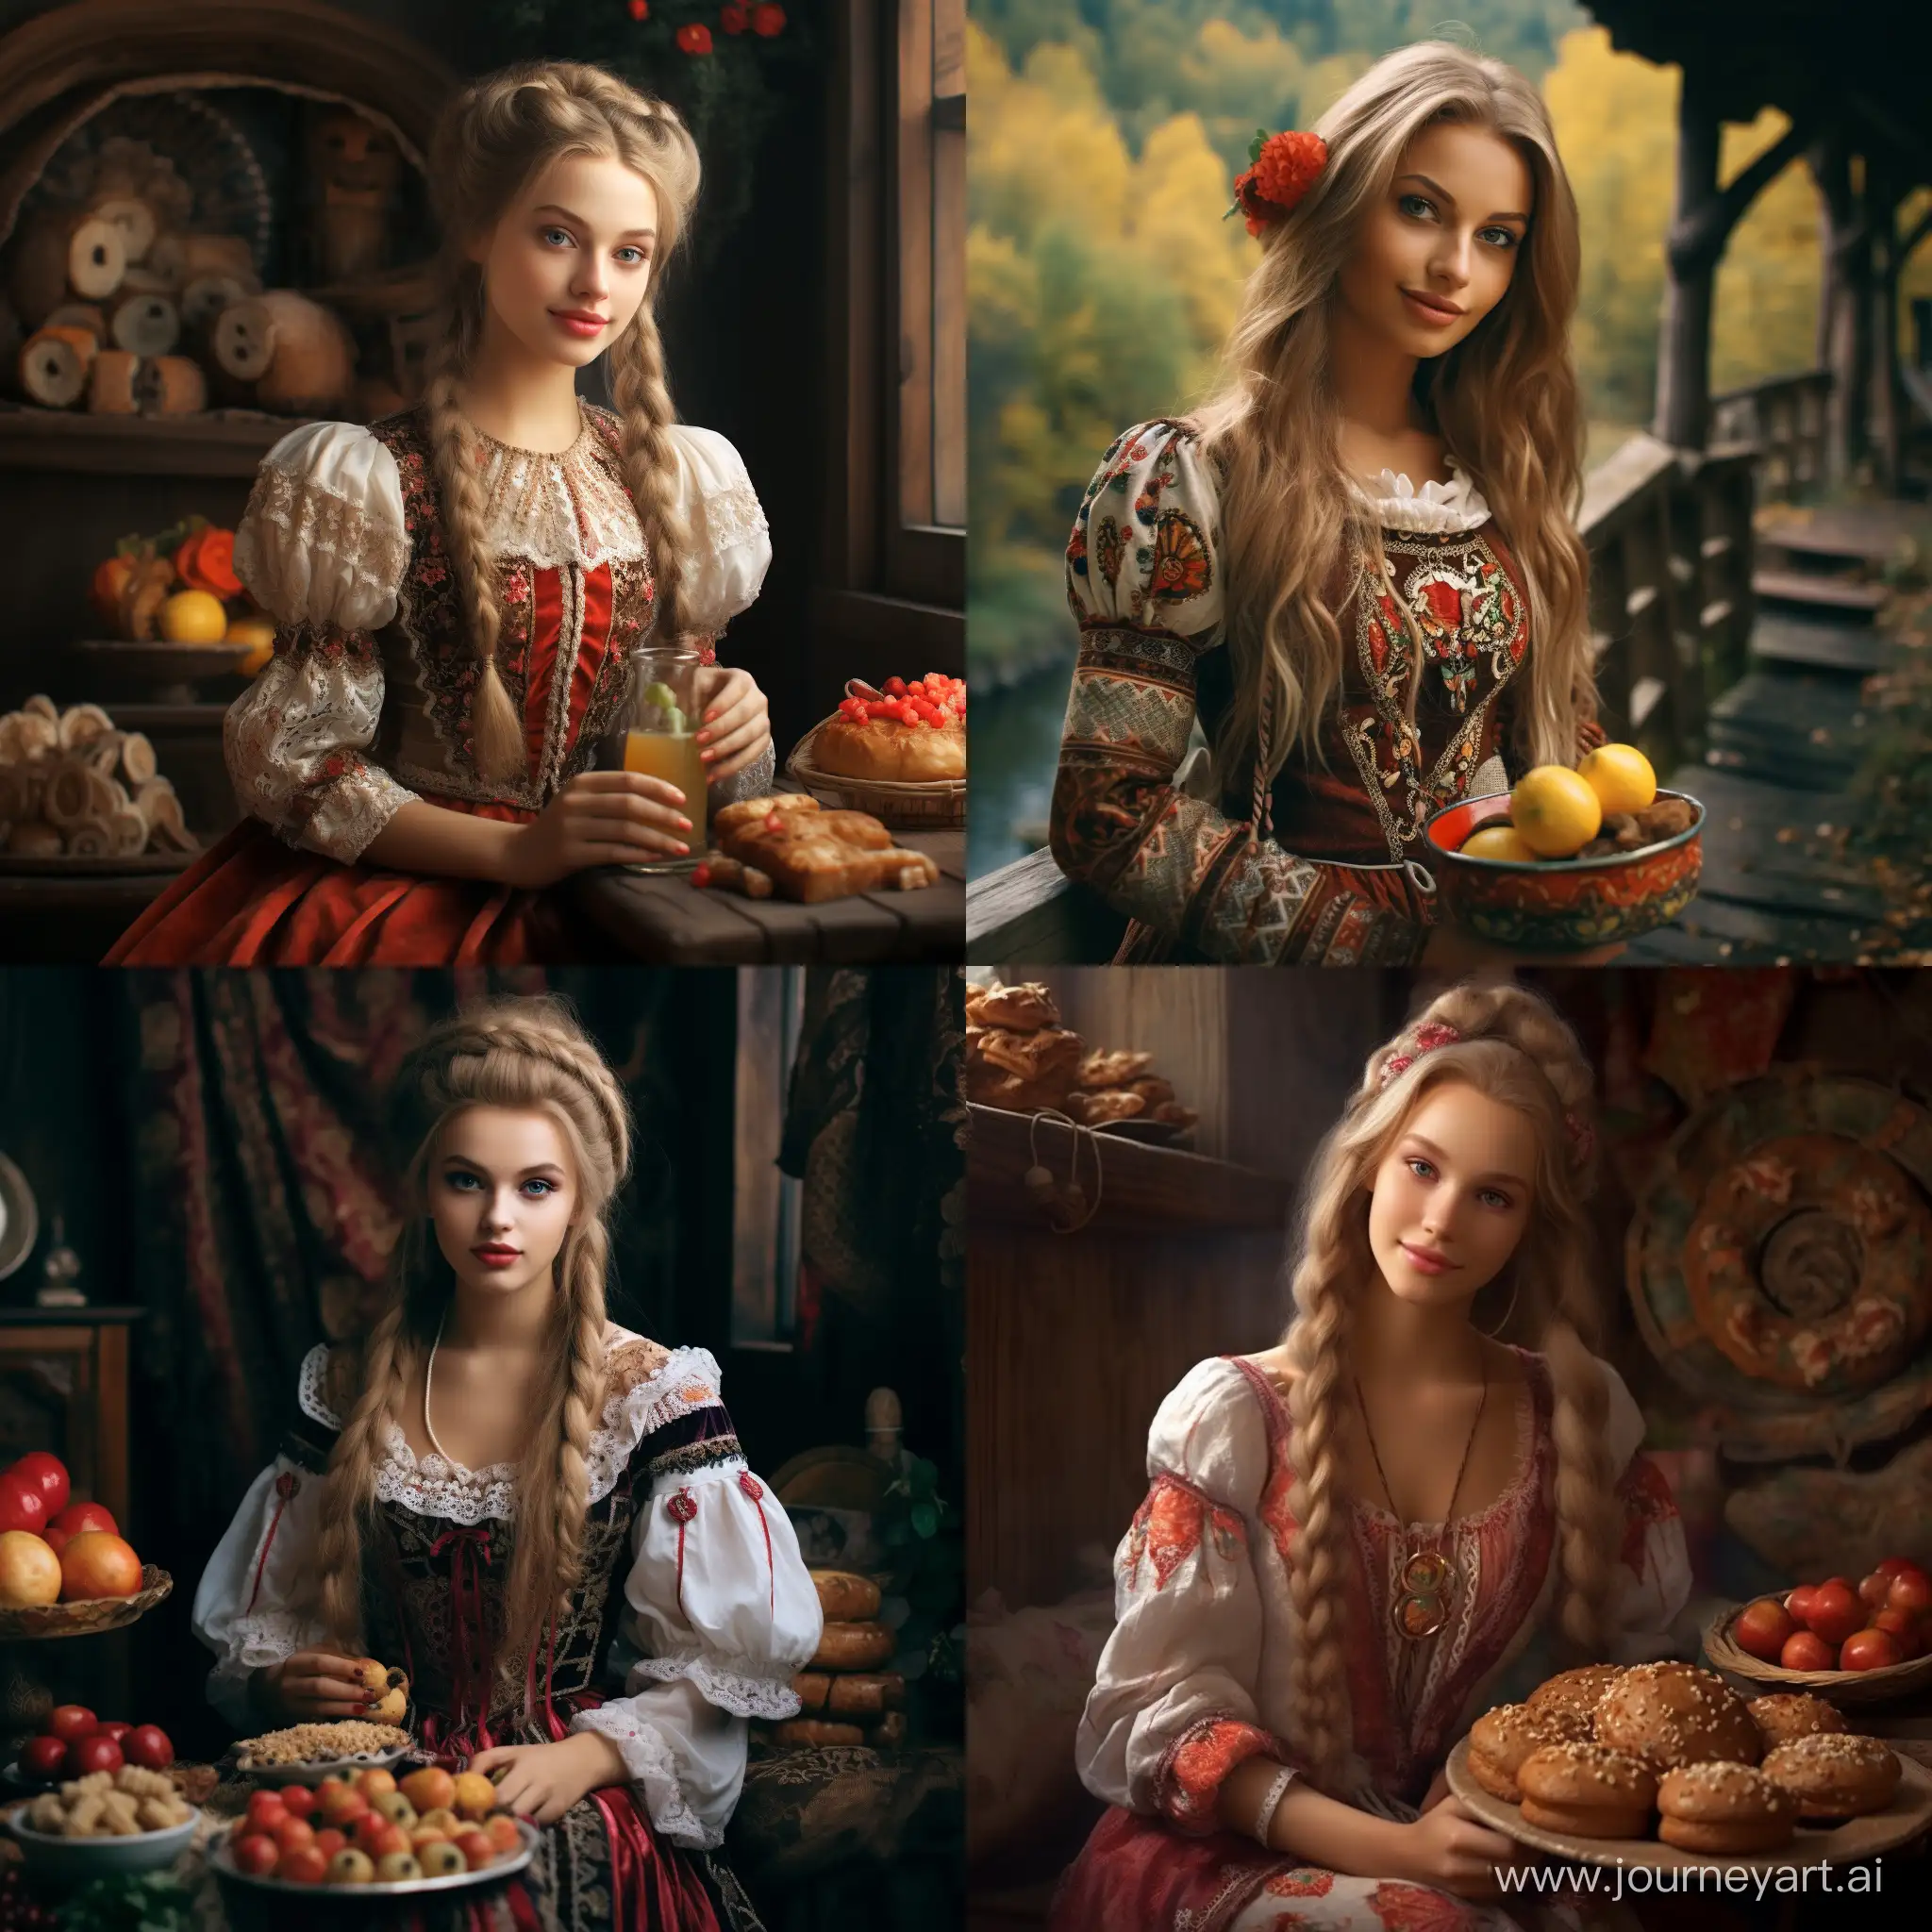 красивая, славянская девочка в виде сказочного персонажа которая любит ореховую пасту